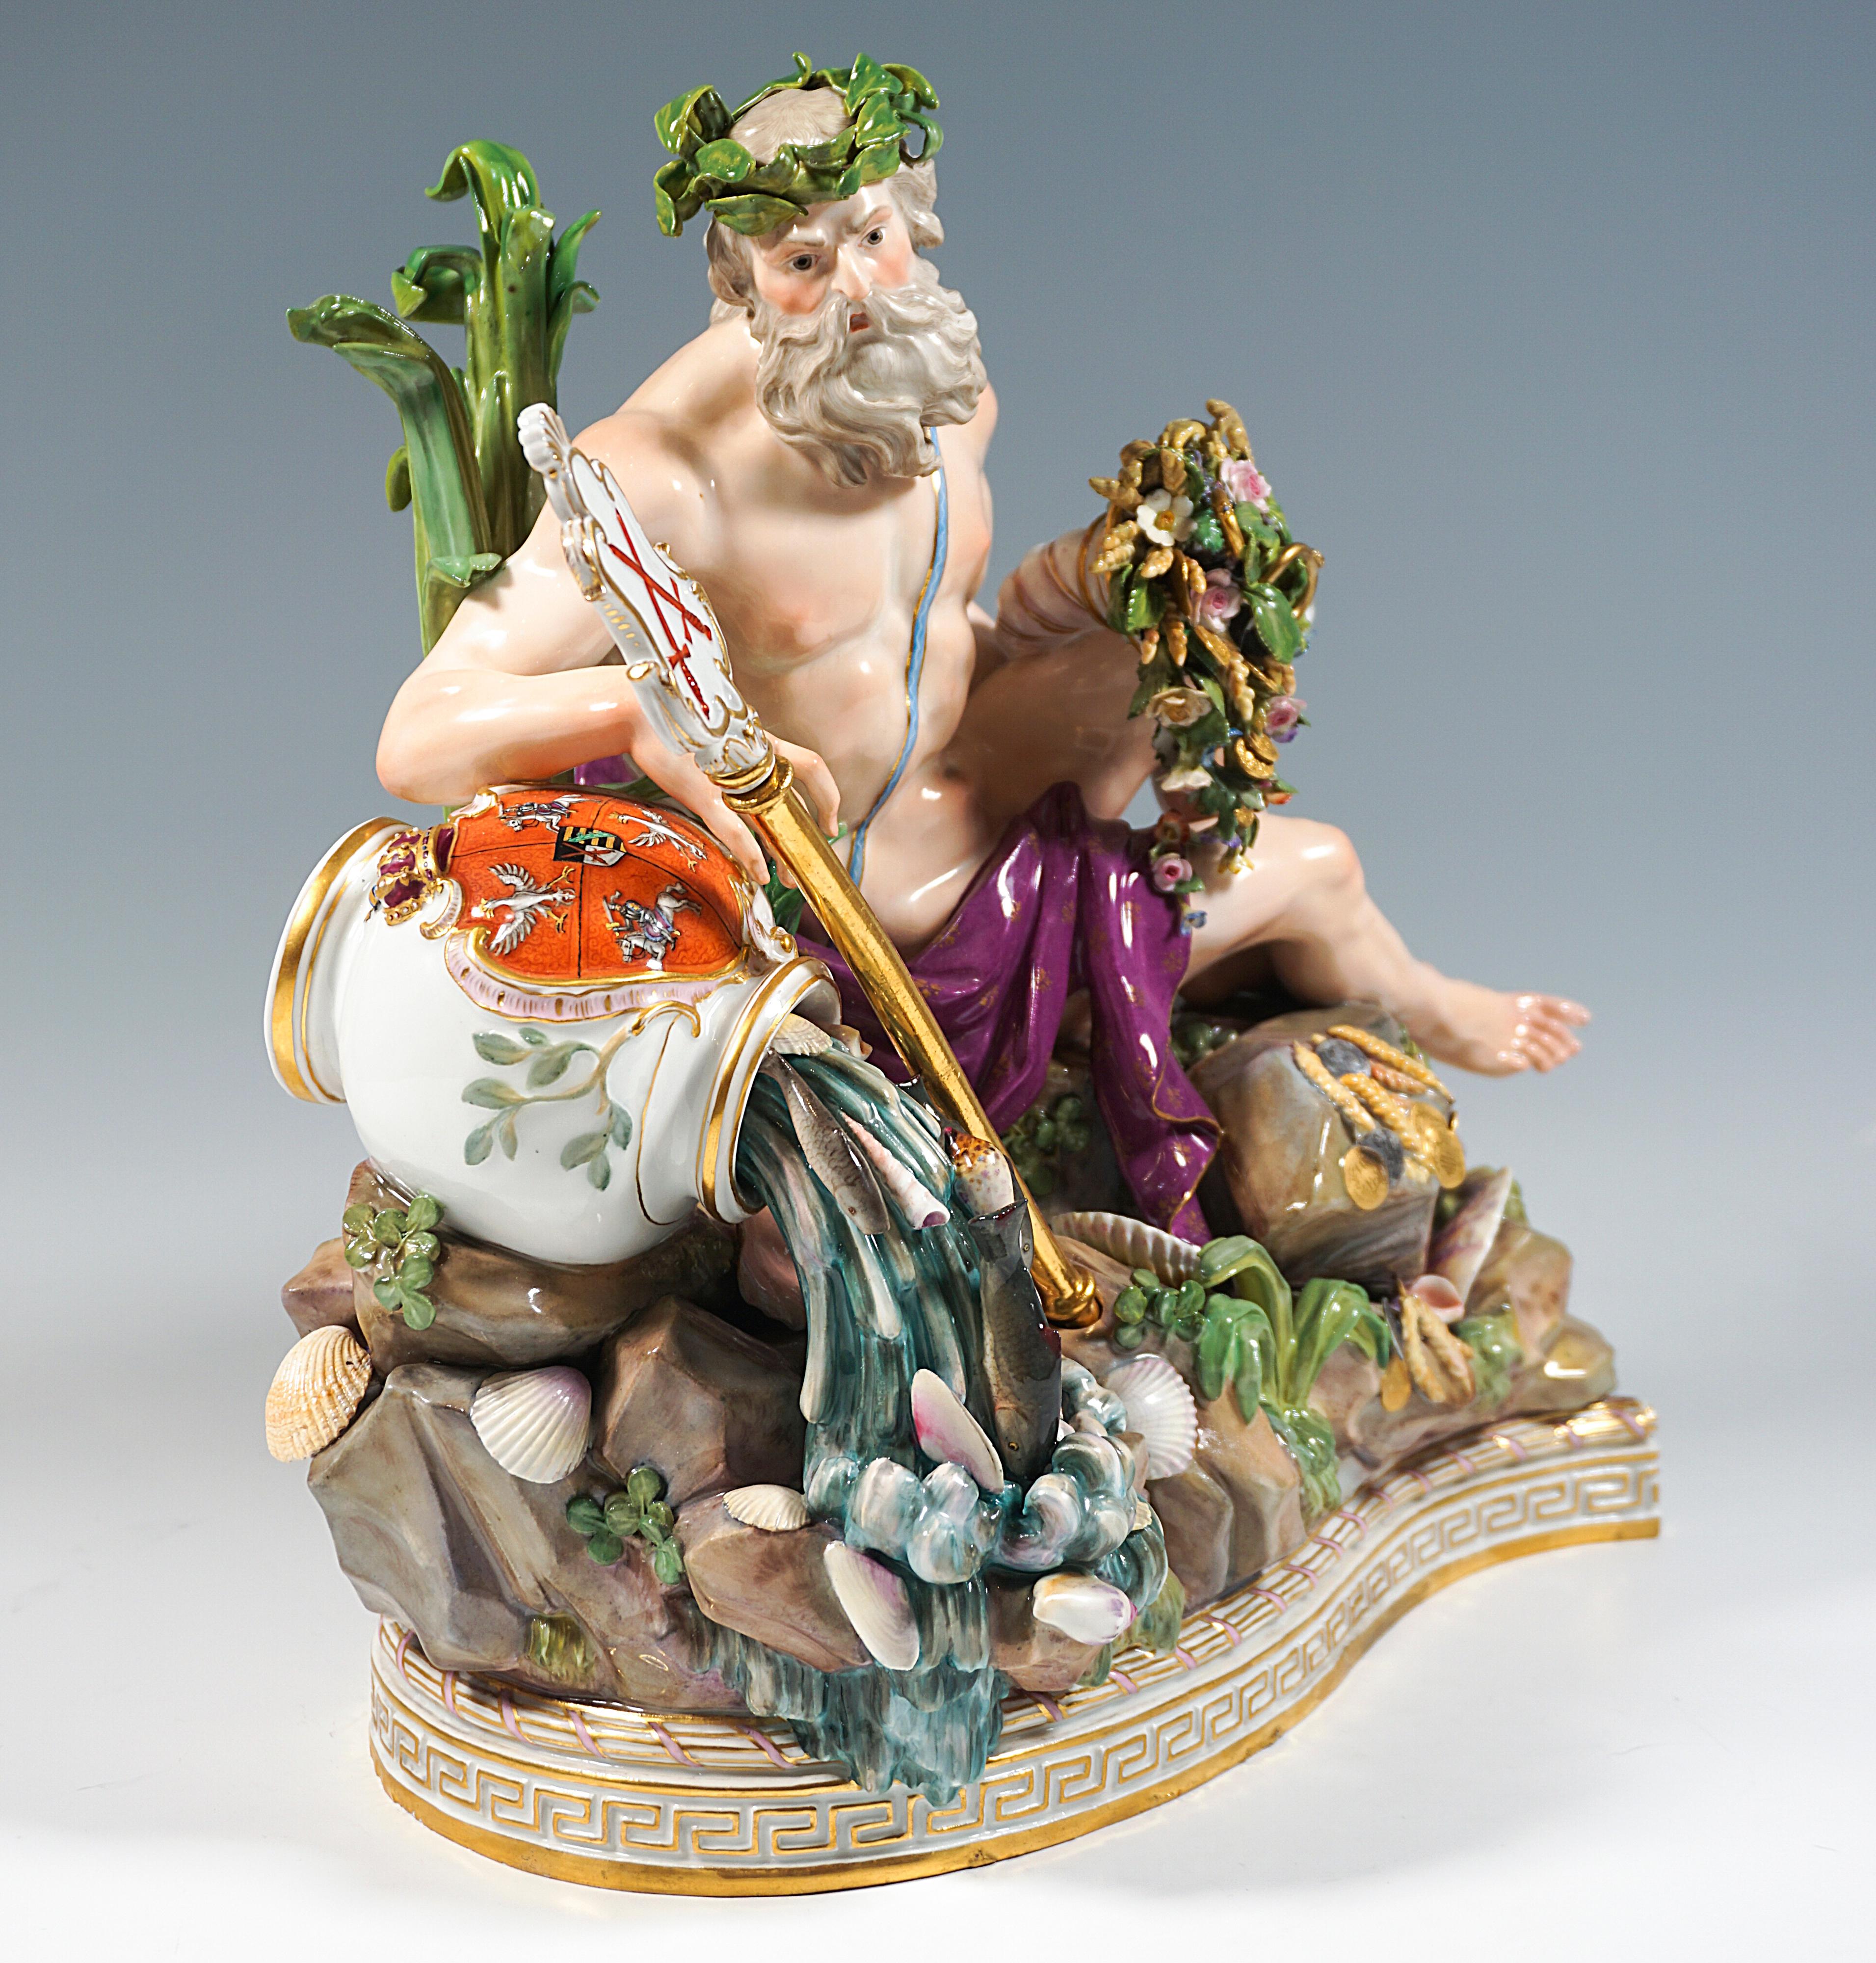 Très rare et excellente sculpture en porcelaine :
Kändler a créé ce groupe en 1772, dès le début du travail sur le grand ordre, comme une personnification de l'un des deux grands principes de l'histoire de l'art. 
fleuves de l'immense Empire russe,